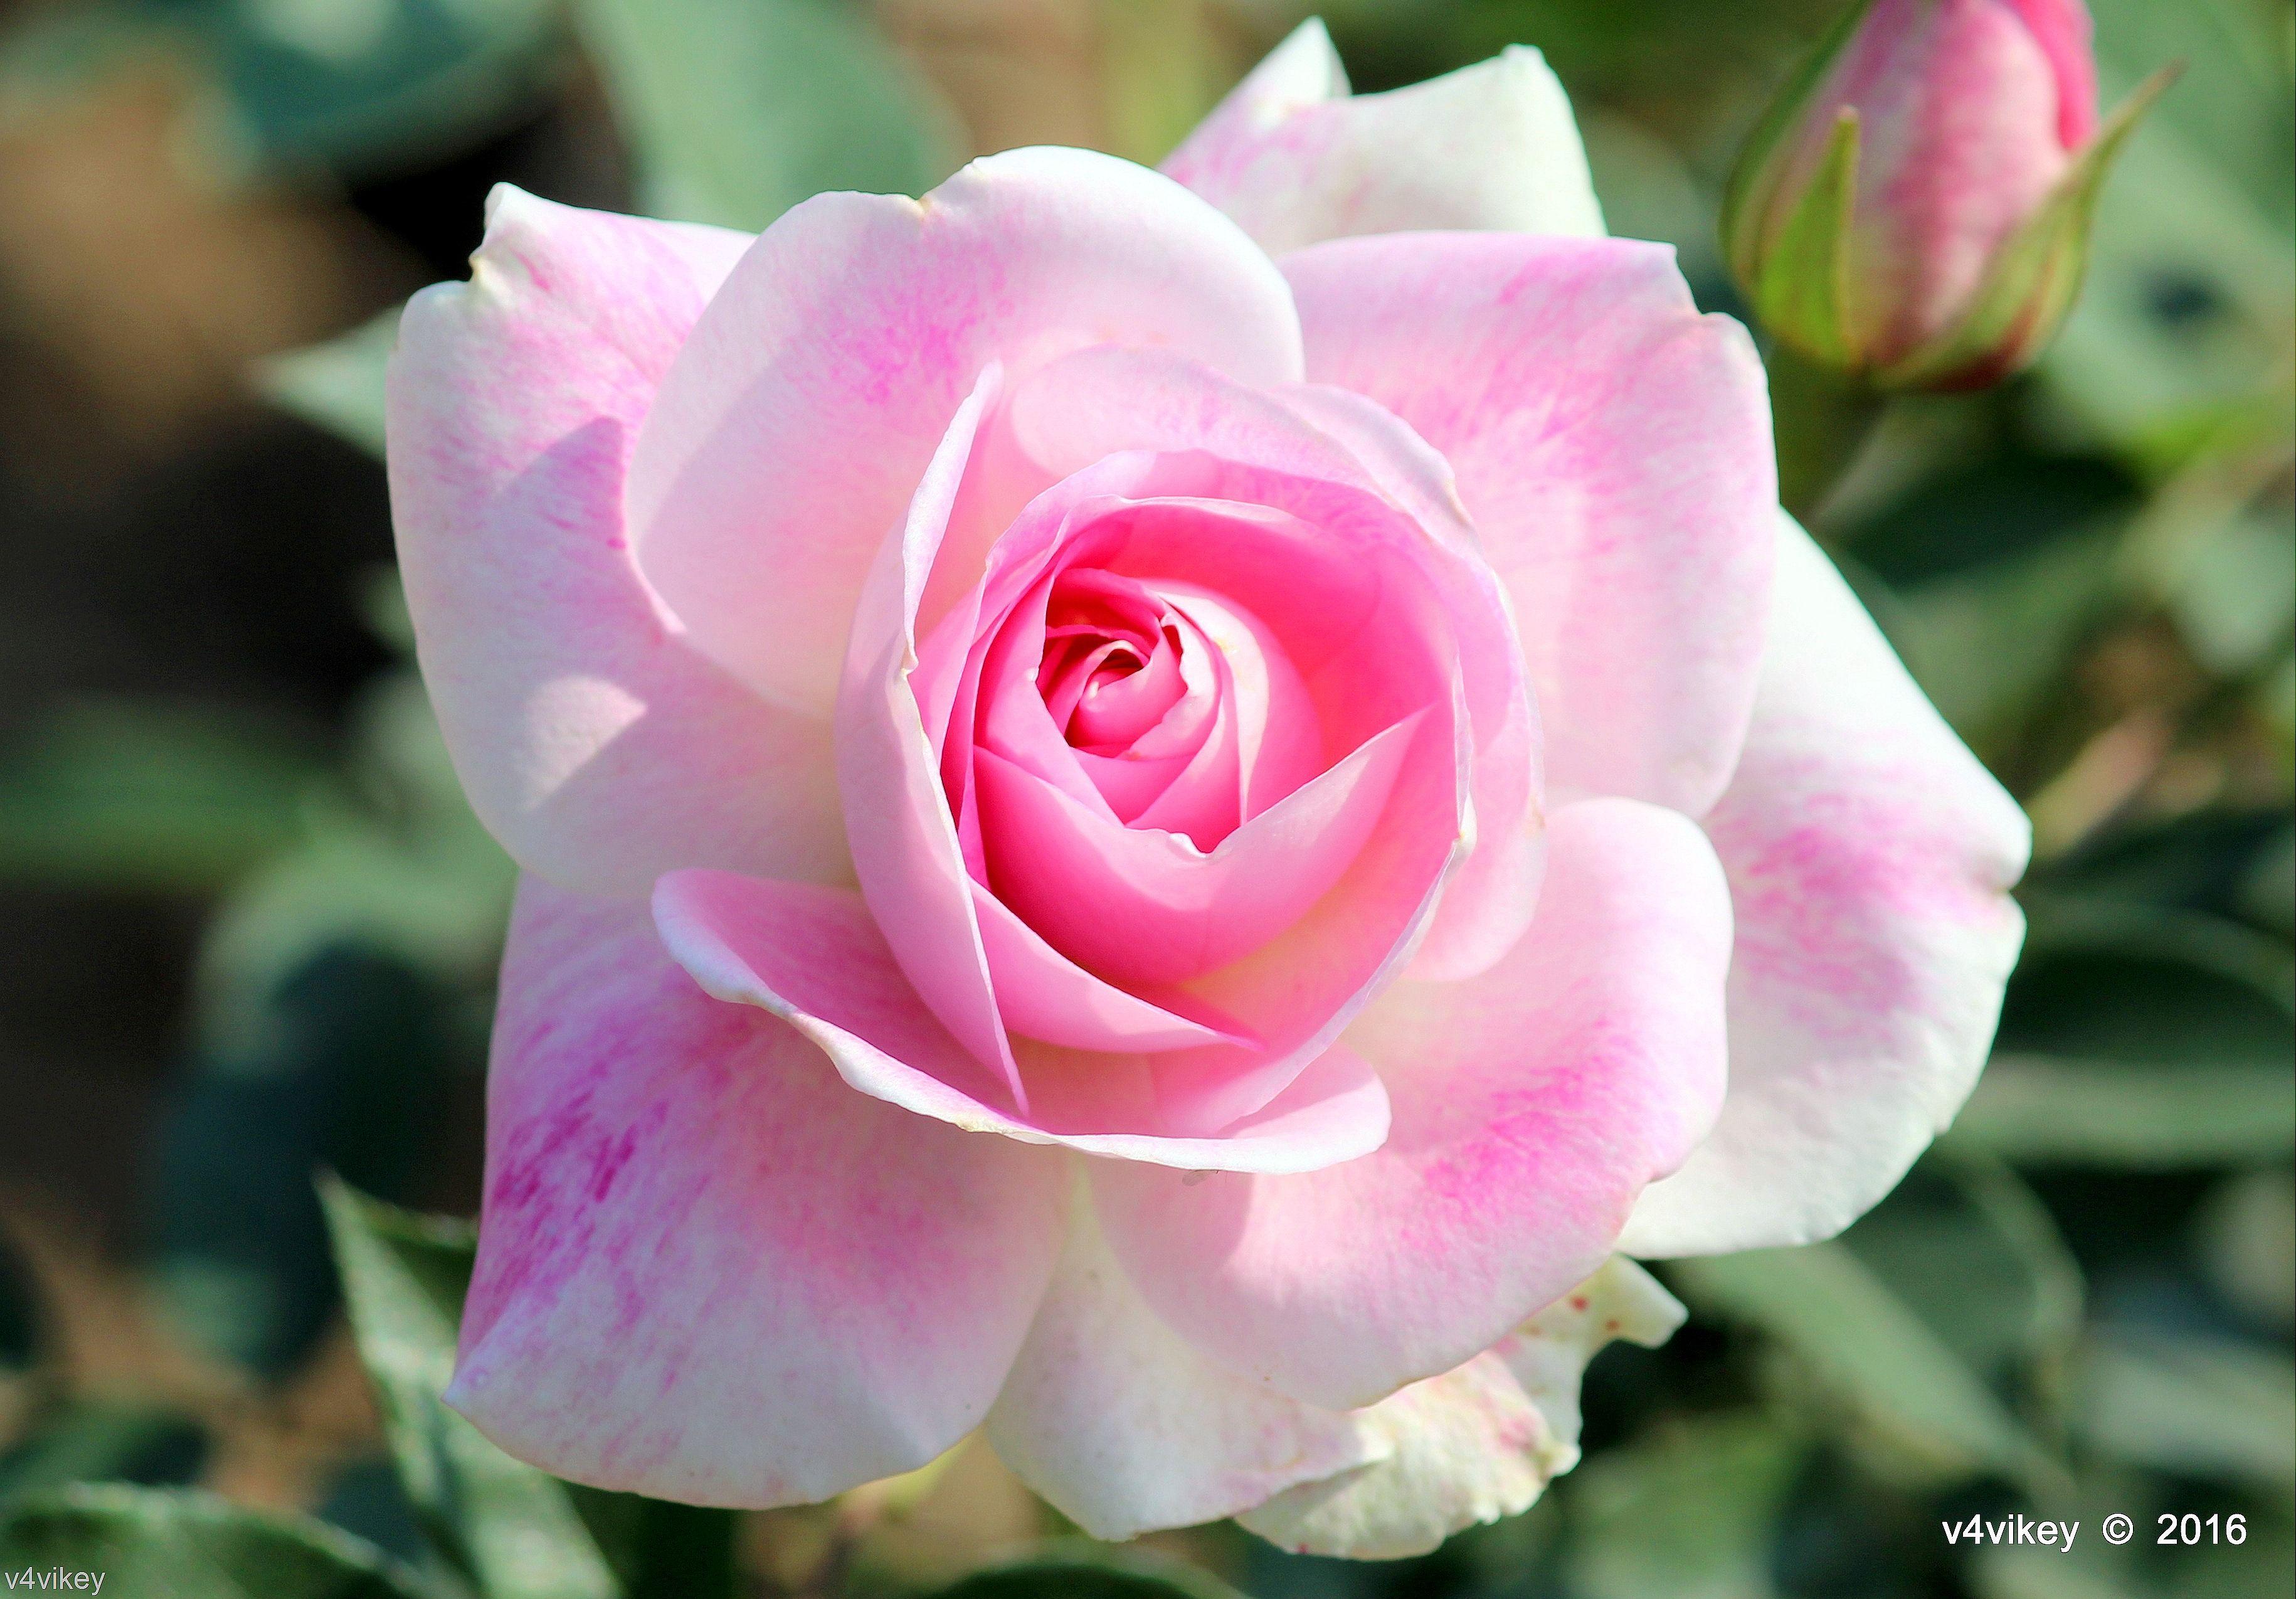 Hình nền hoa hồng 3661x2549: Màu hồng Hoa hồng đẹp